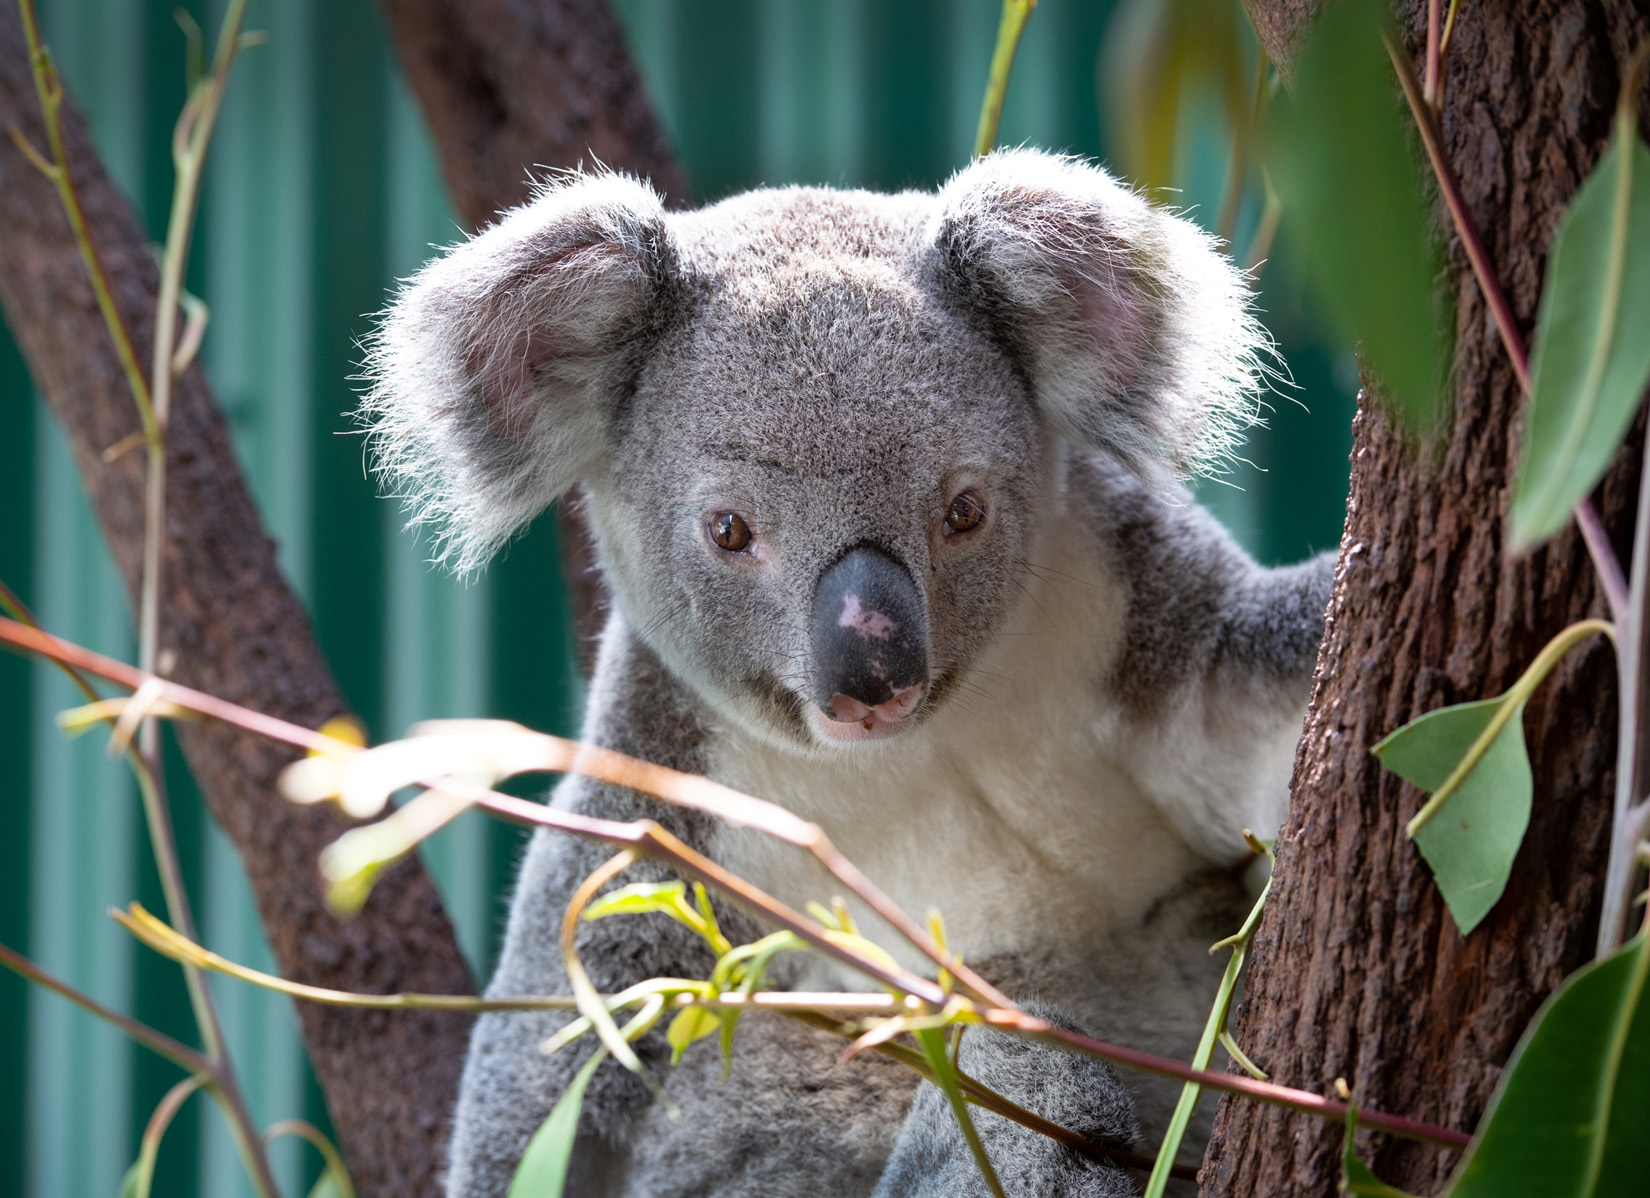 Giving koalas a fair shot at survival